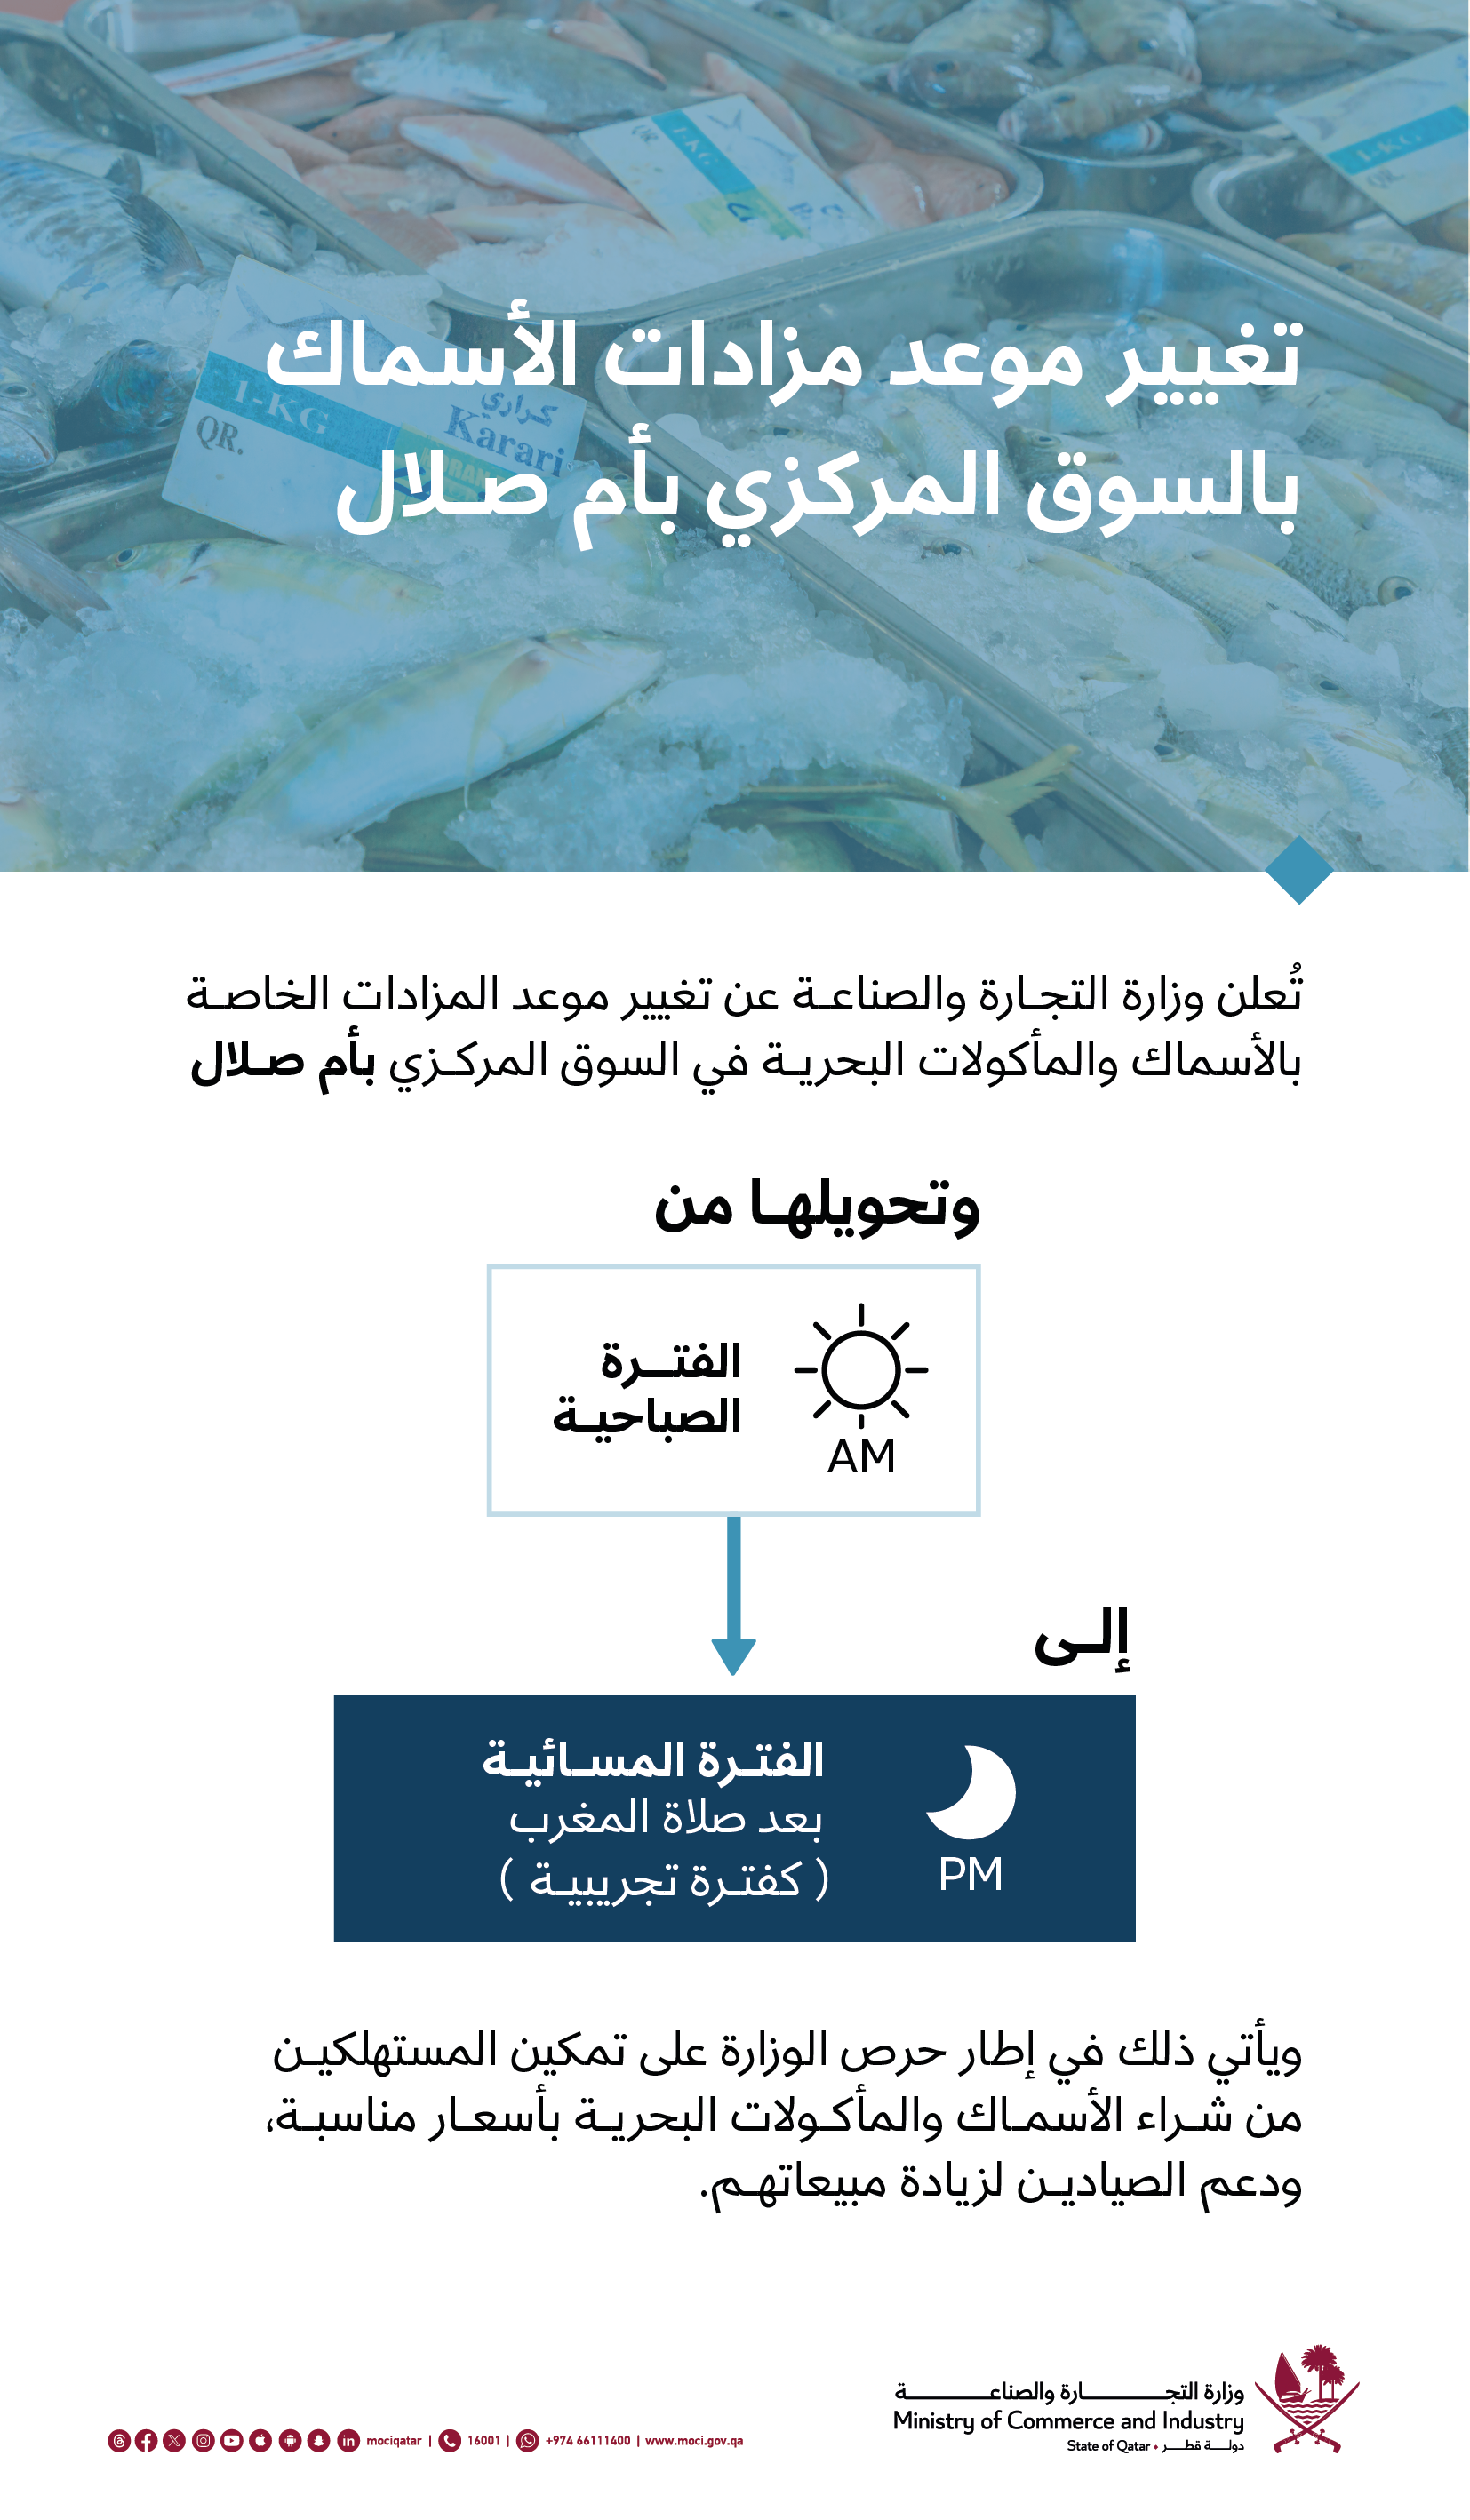 وزارة التجارة والصناعة تعلن عن تغيير موعد مزادات الأسماك بالسوق المركزي بأم صلال